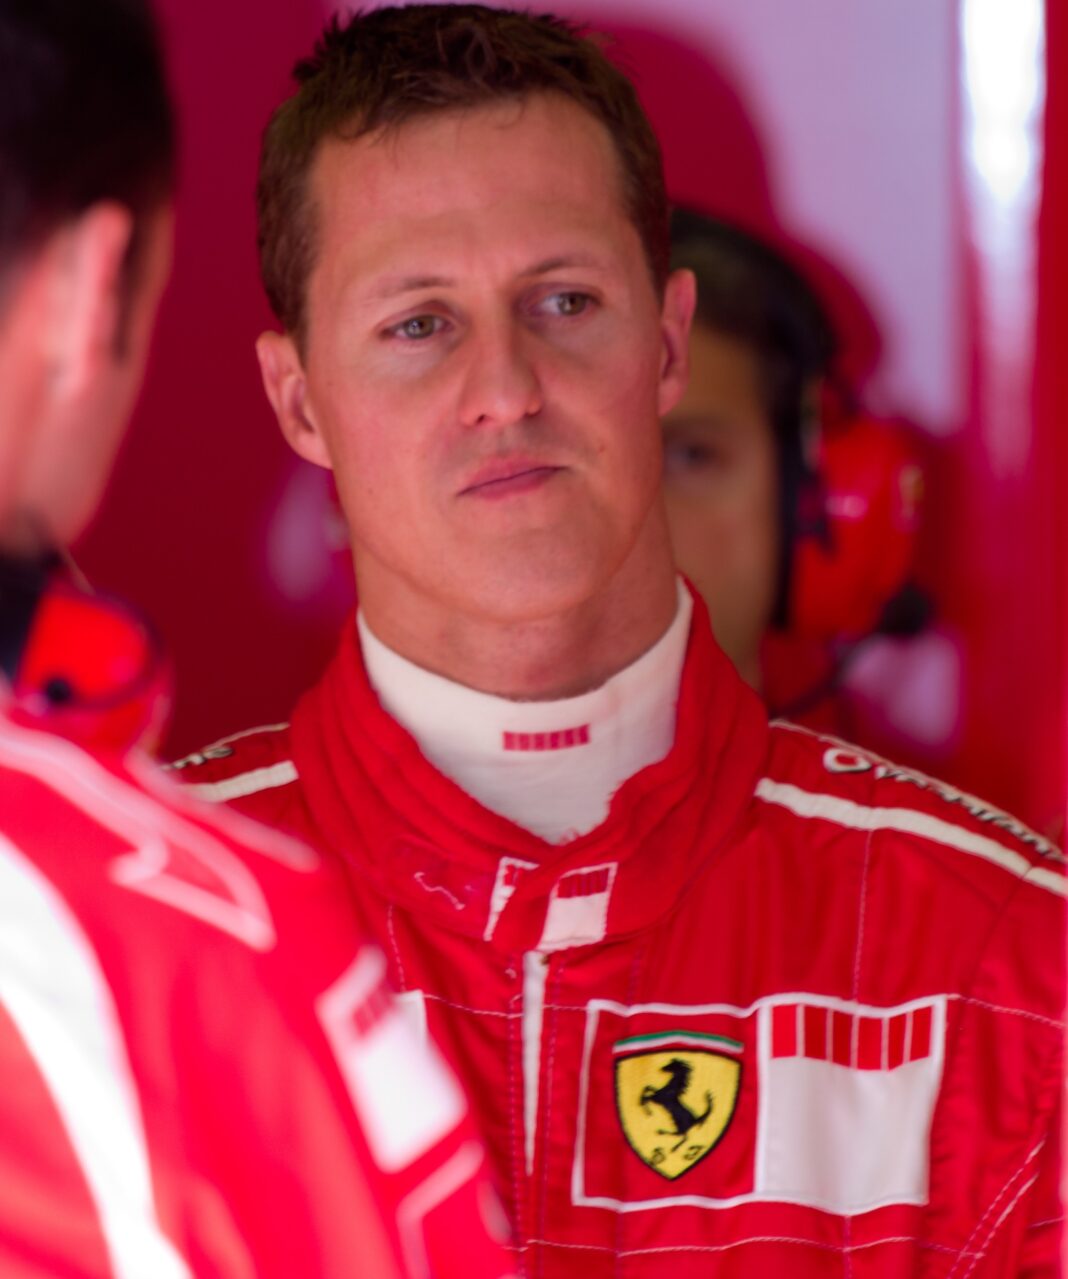 Άσχημα νέα για τον Michael Schumacher! Η δήλωση-σοκ για την κατάσταση της υγείας του